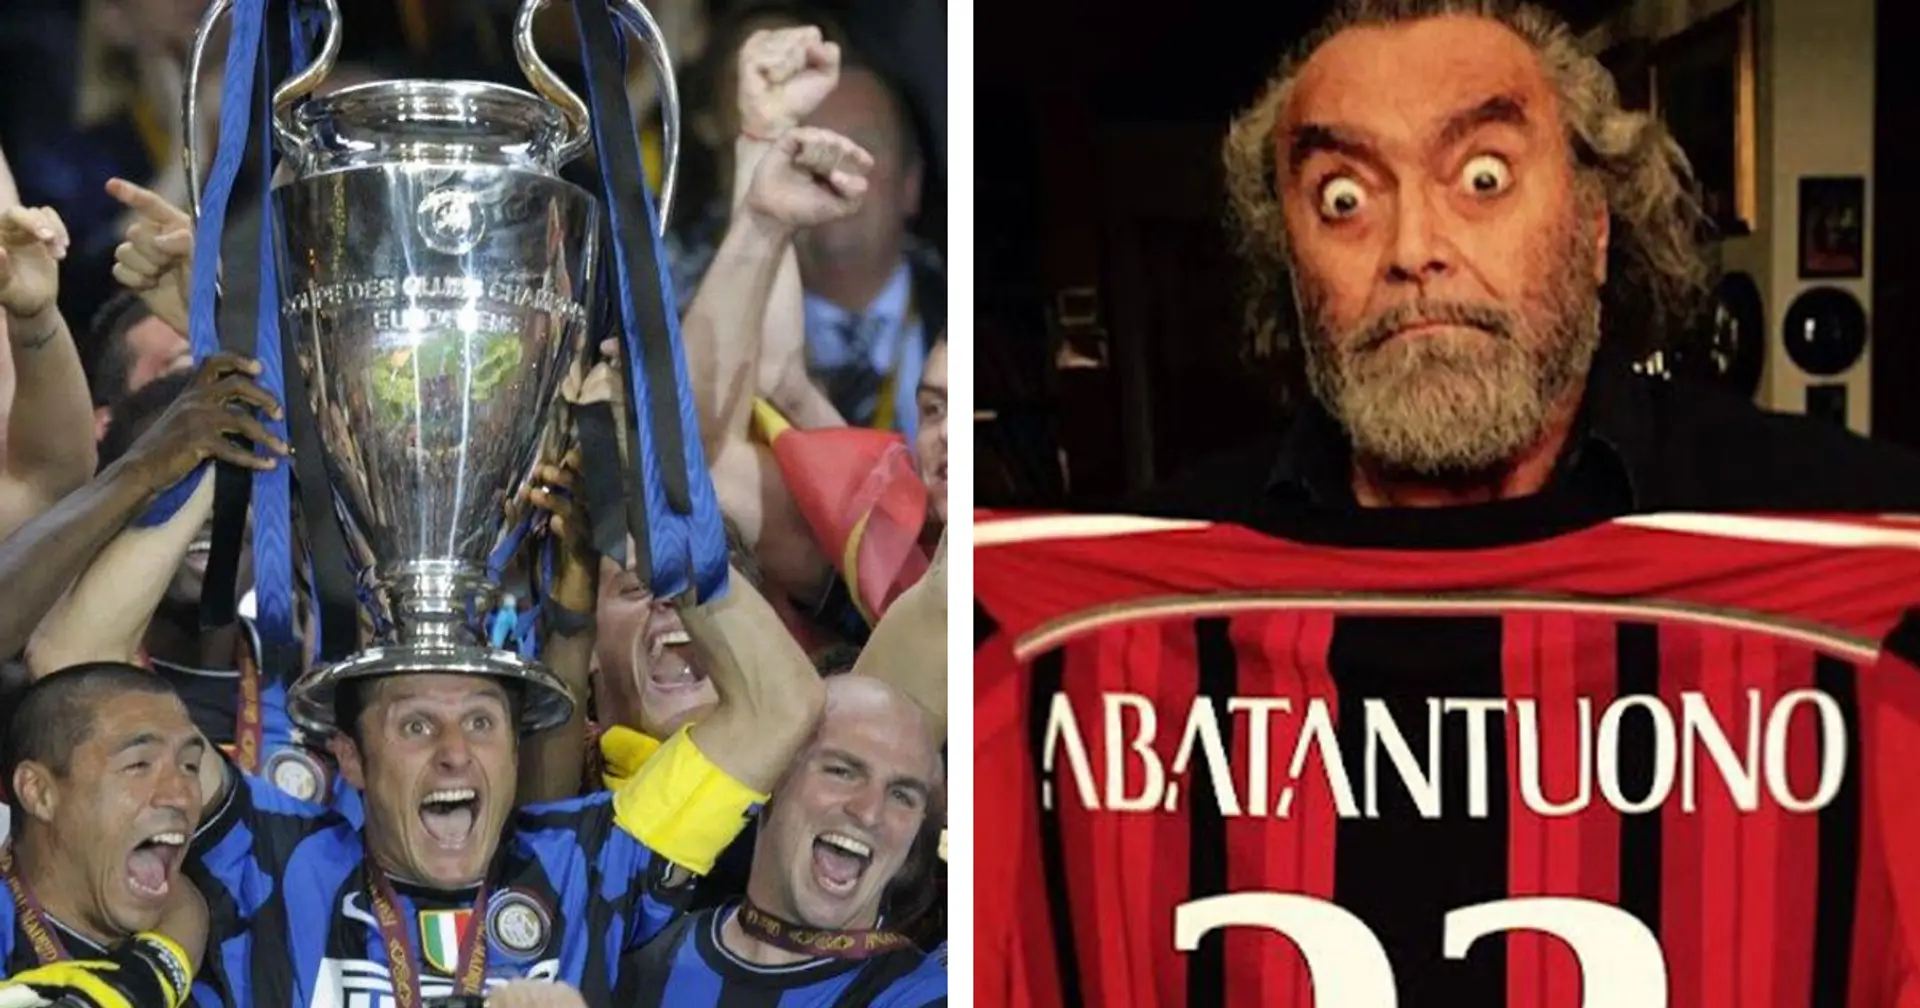 "Il Triplete non esiste, roba da Inter!": il tifoso milanista Abatantuono cerca di sminuire i successi nerazzurri